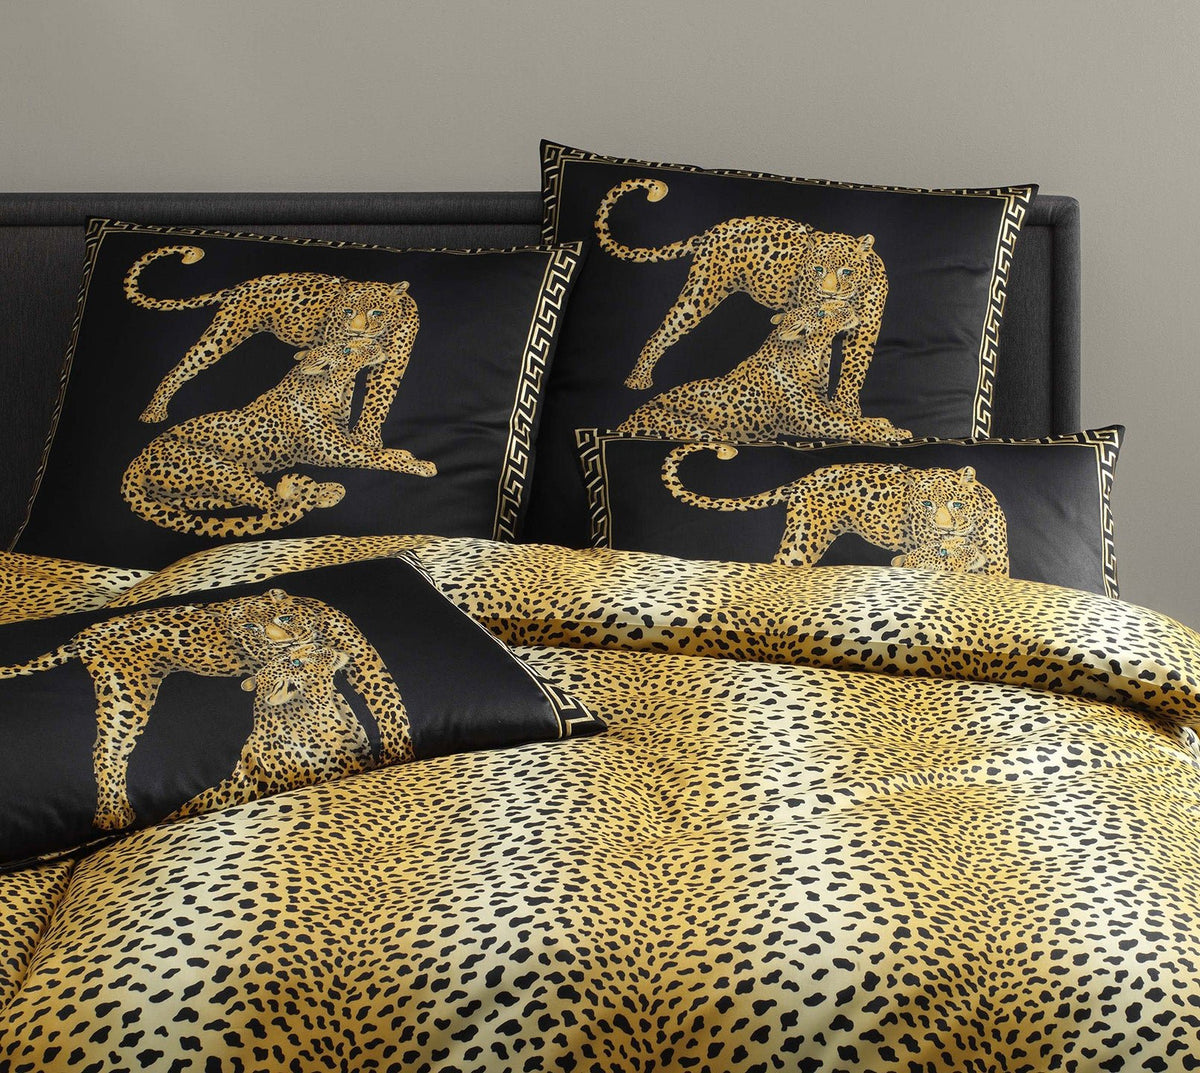 Satin Bettwaesche Gepard Pair in Schwarz Gepardmotiv Schlafzimmer #farbe_Schwarz #farbe_Schwarz